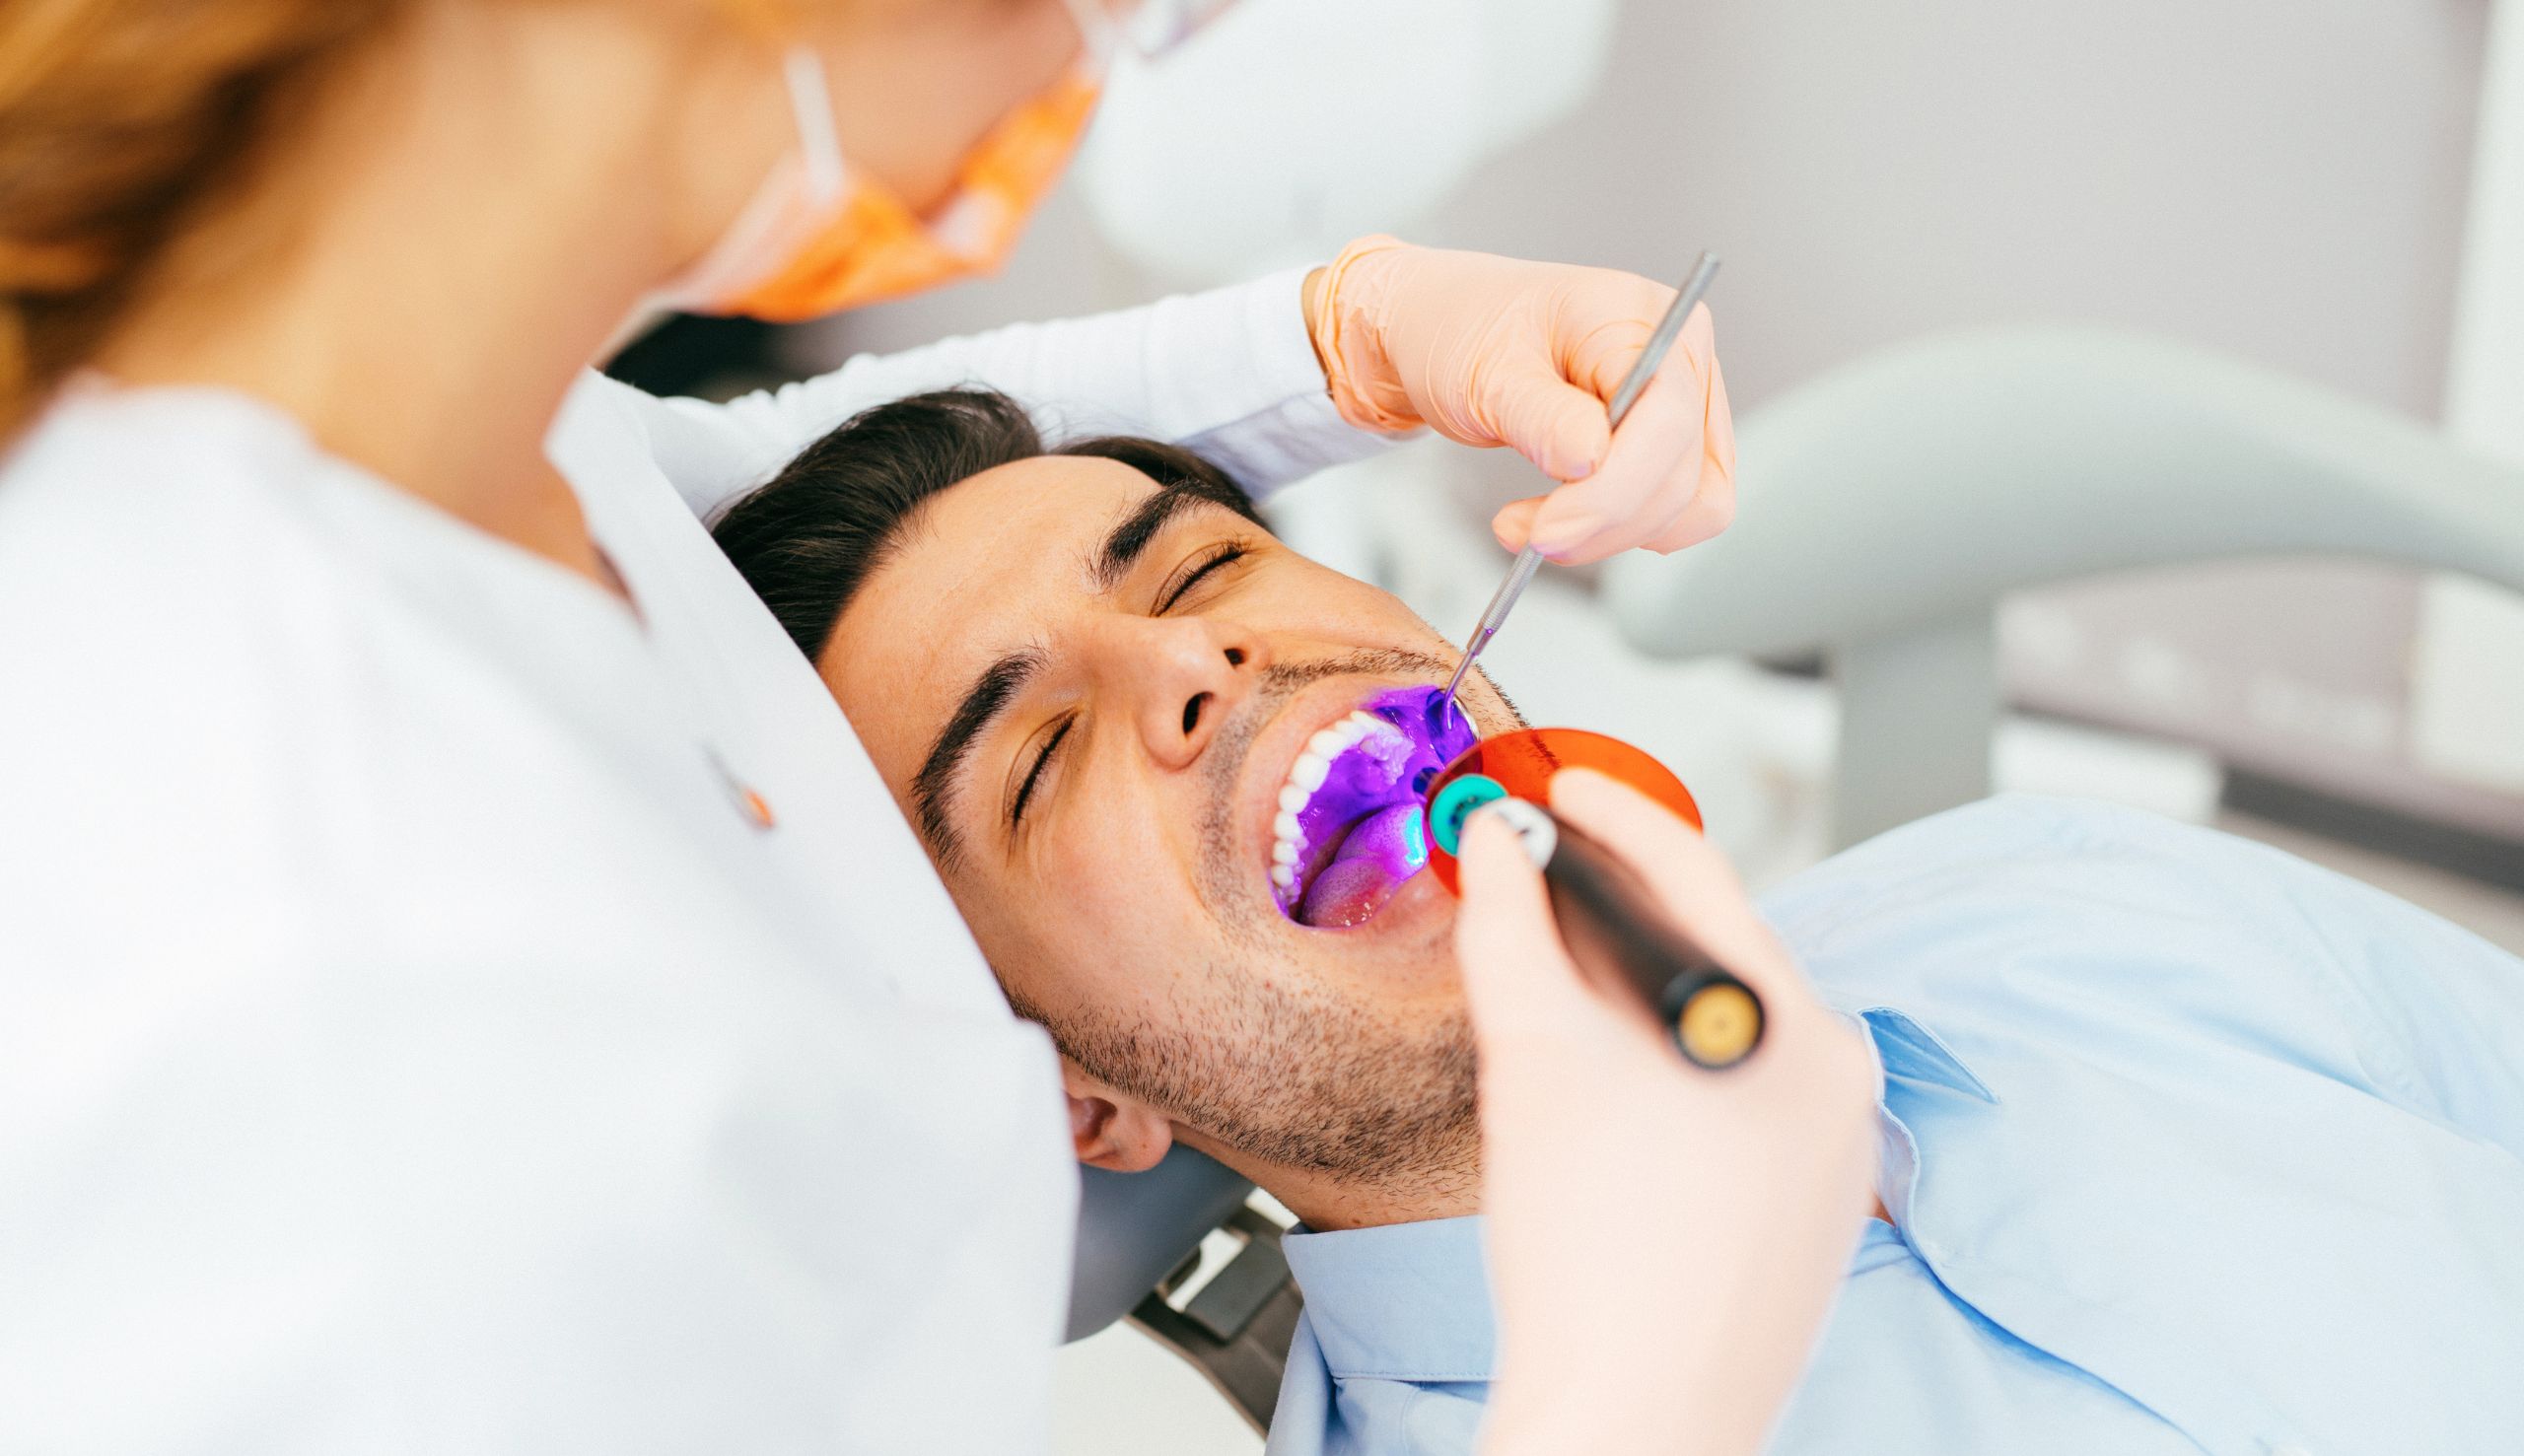 La Stratification Composites : Une Technique Innovante pour des Restaurations Dentaires Esthétiques et Durables | Clinique dentaire Sana Oris | Paris